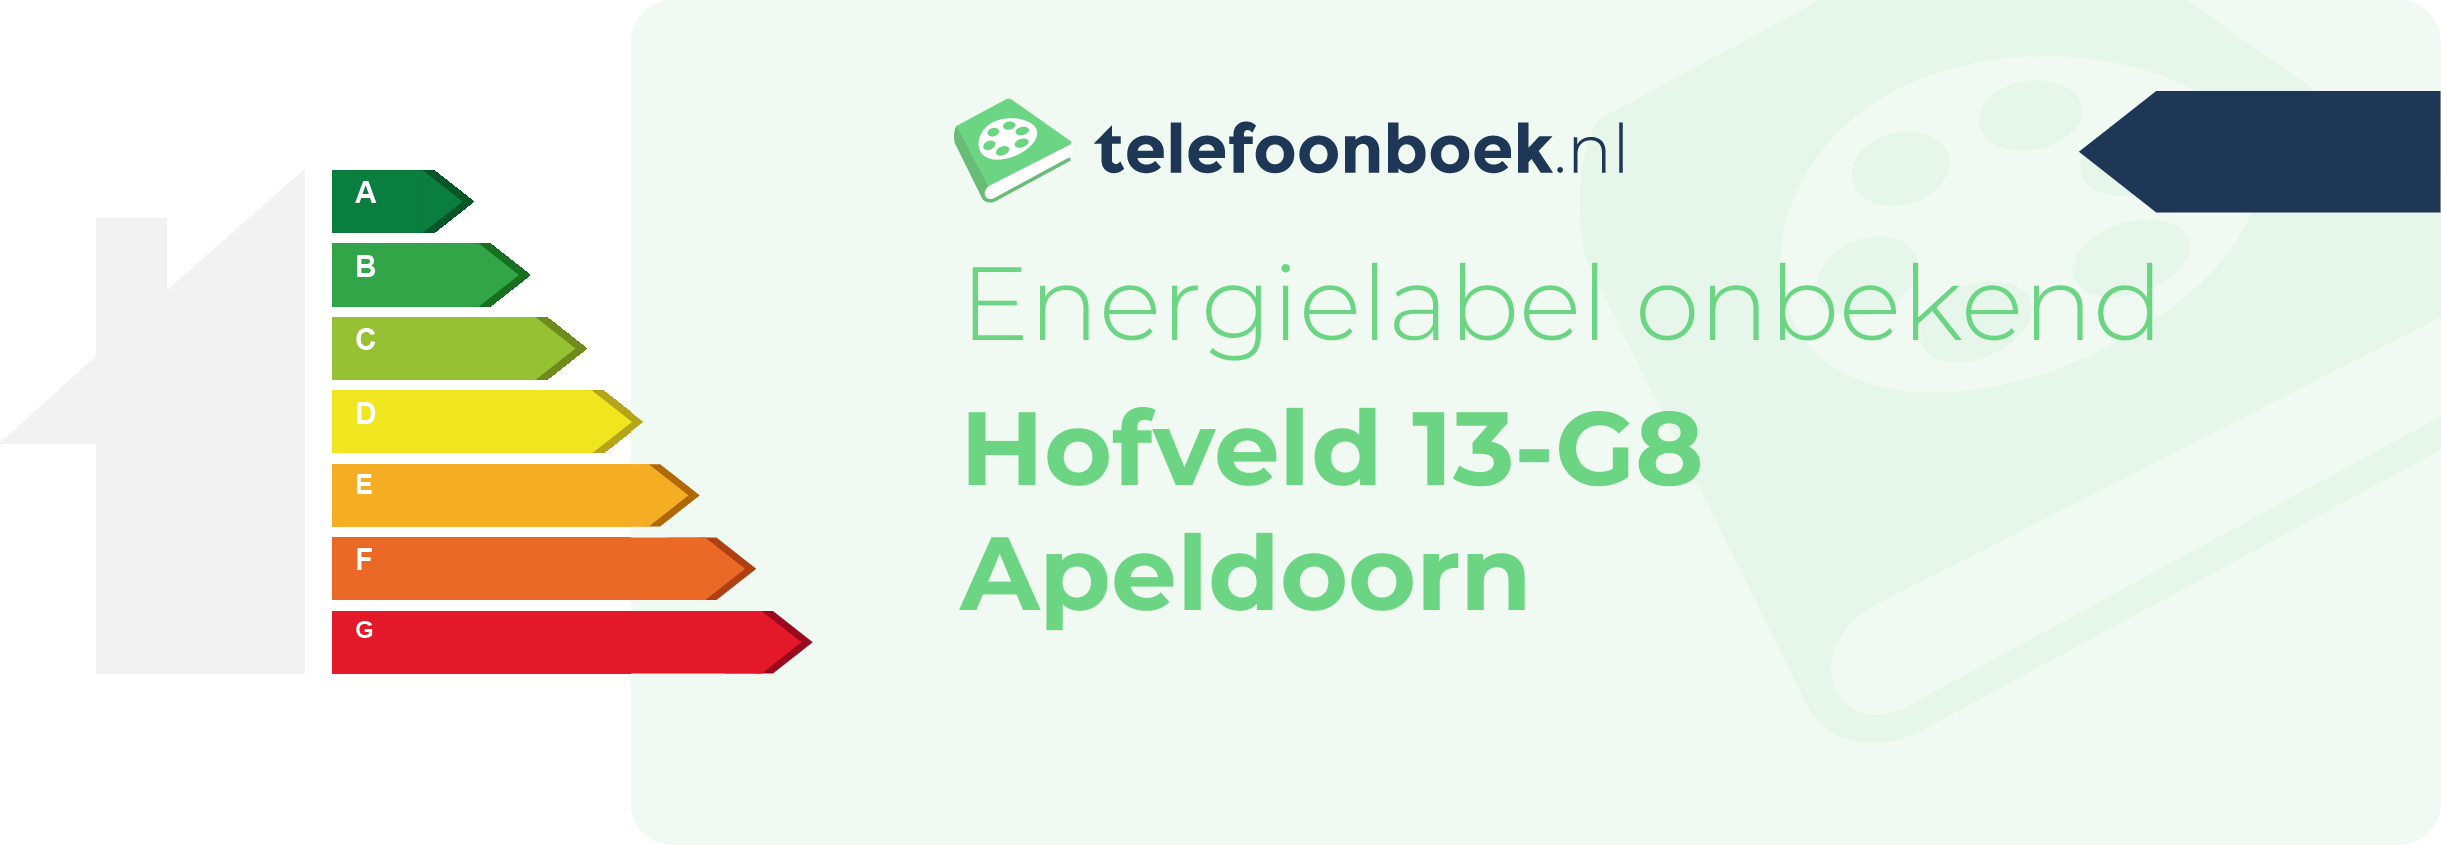 Energielabel Hofveld 13-G8 Apeldoorn